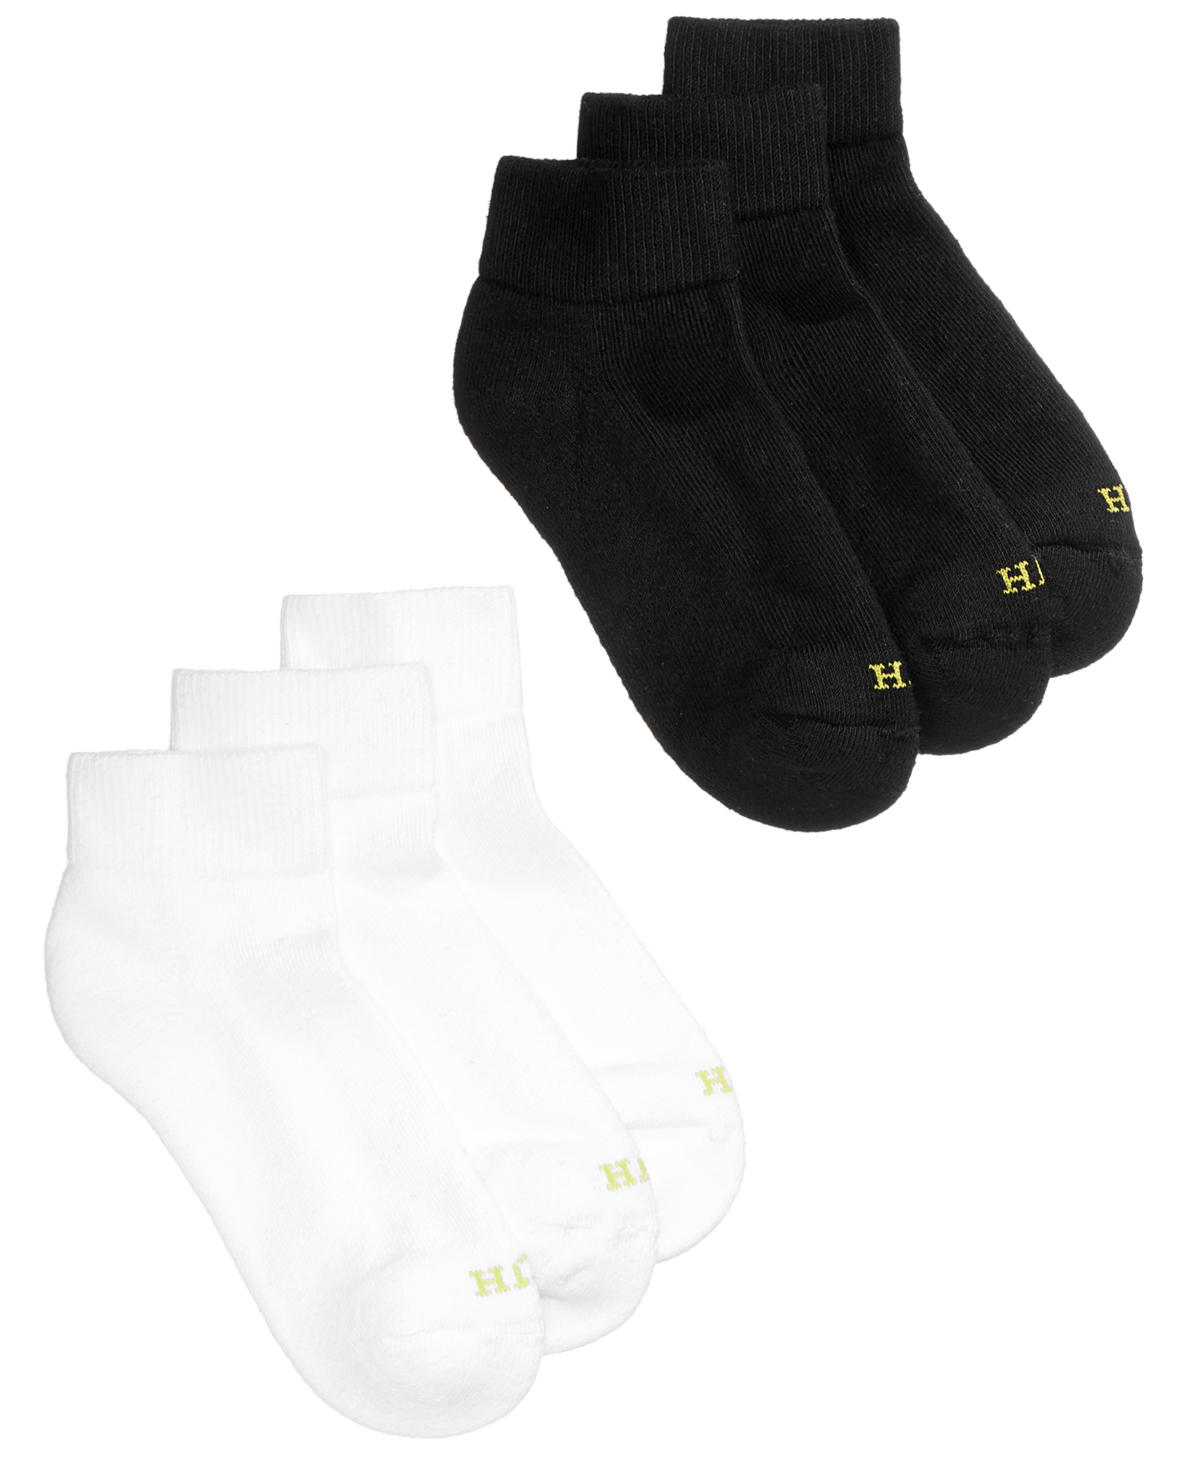 Women's Quarter Top 6 Pack Socks - White